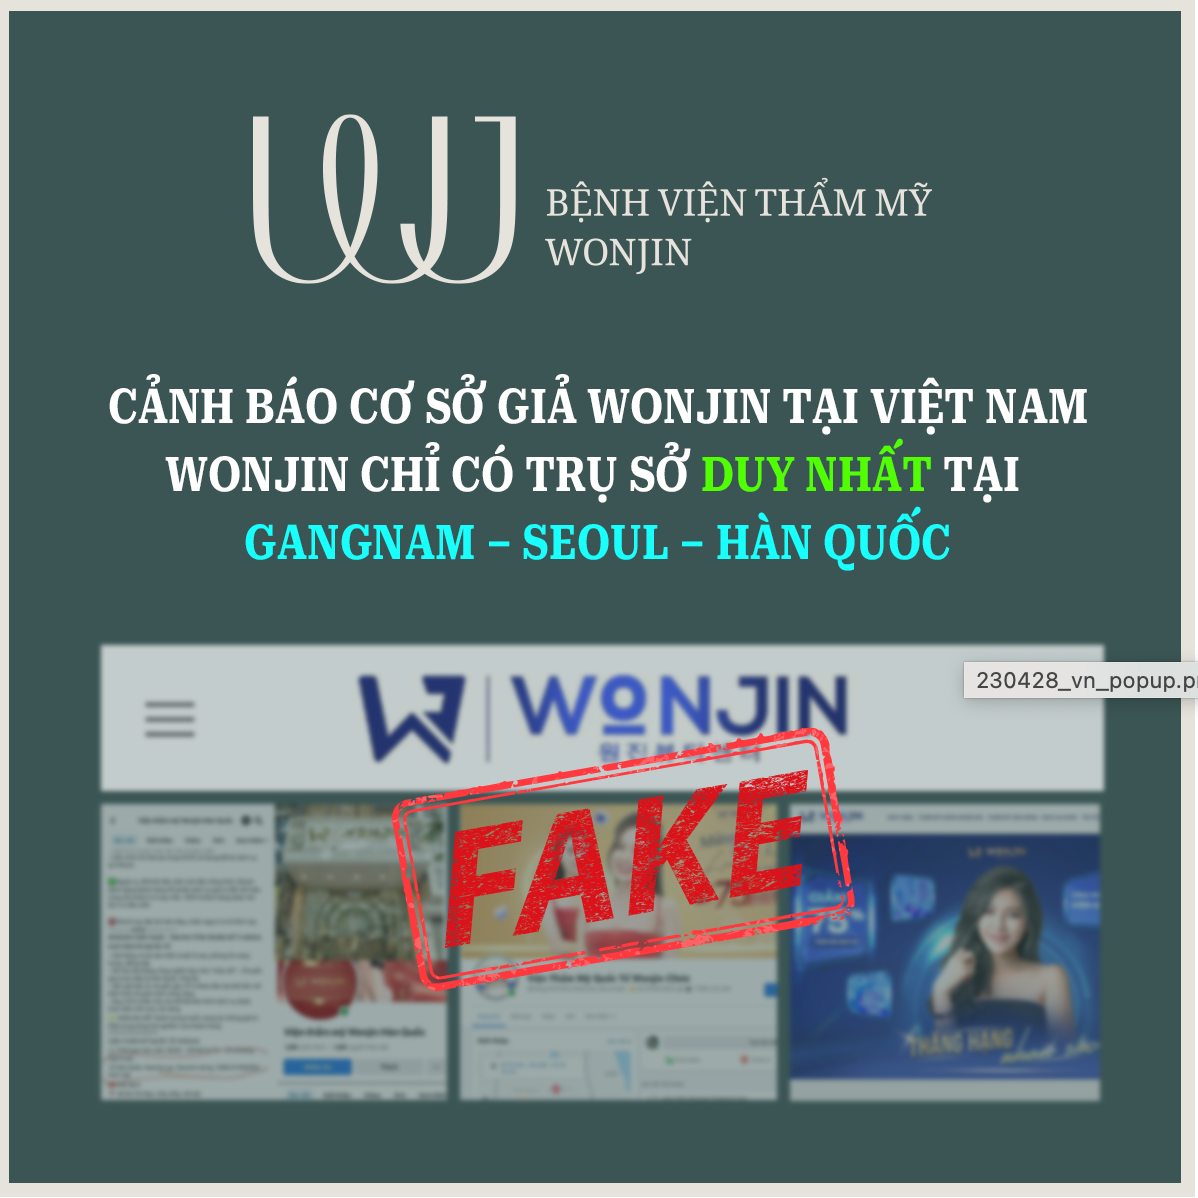 Bệnh viện Thẩm mỹ Wonjin đăng tải thông tin cảnh báo khách hàng trên trang web chính thức. Ảnh: Nhóm PV